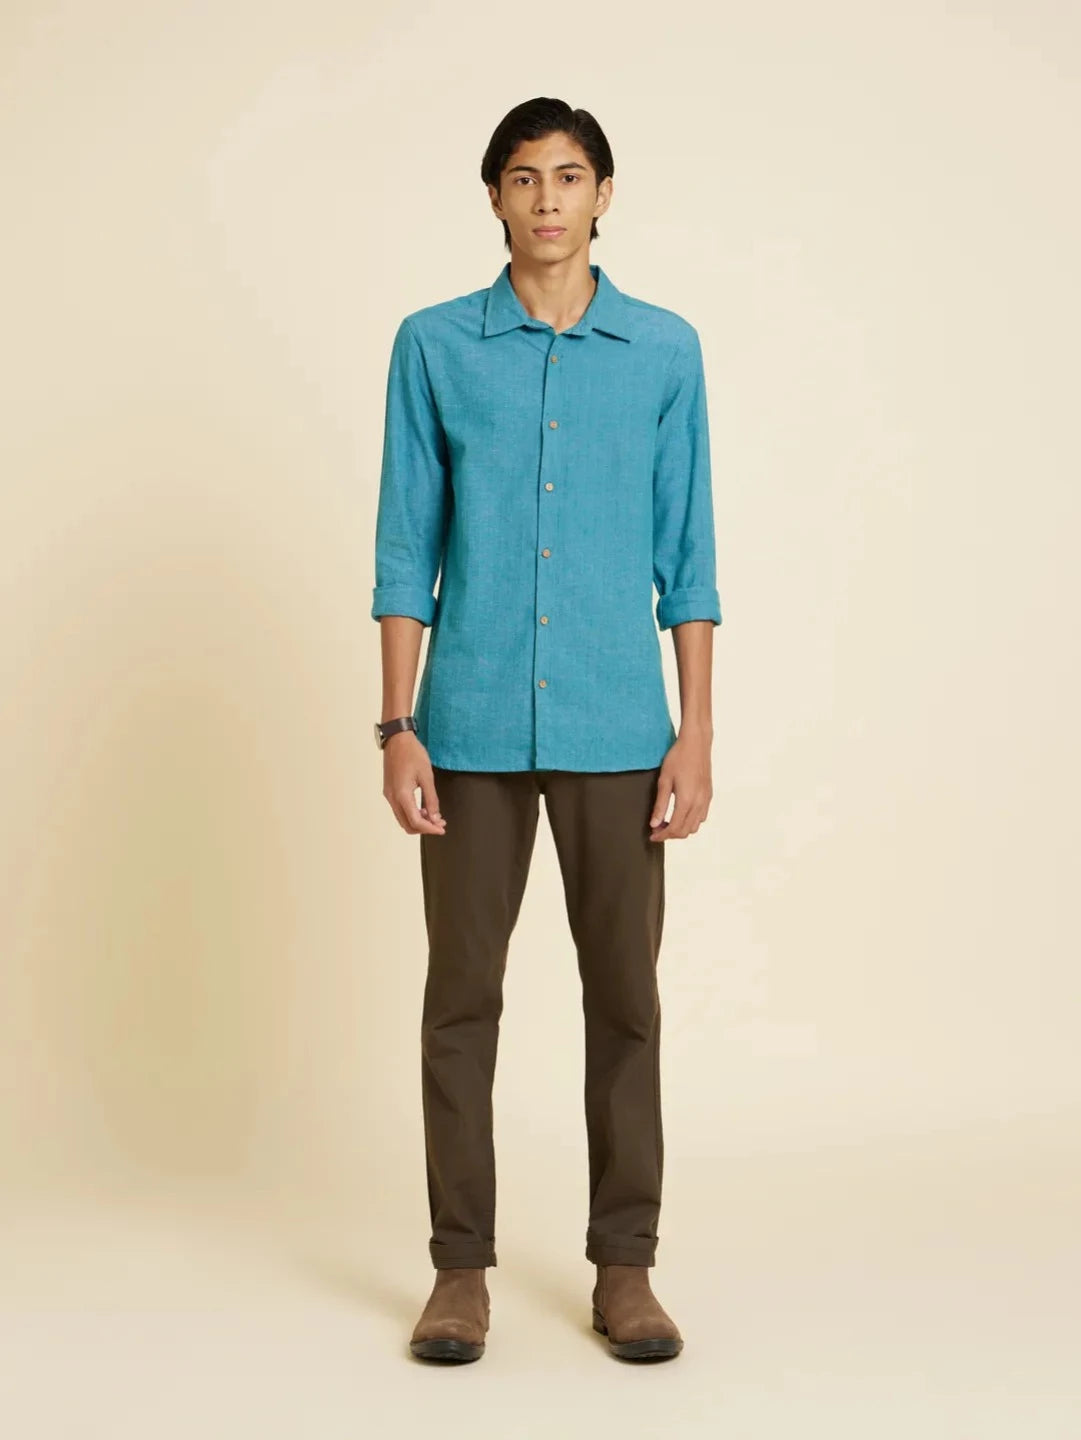 Serene Bondi Blue Handloom Shirt